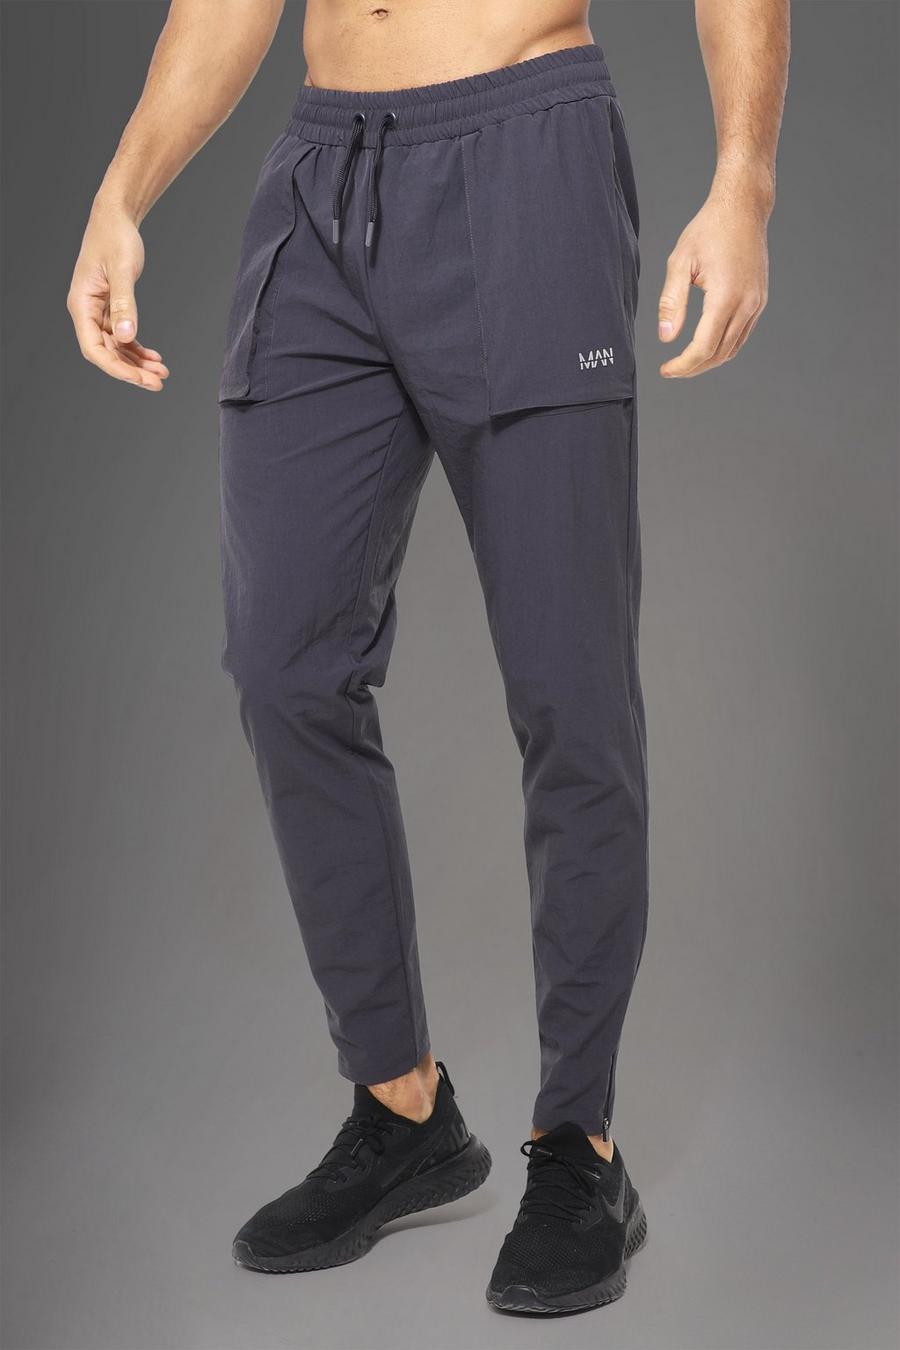 Pantaloni tuta Man Active Gym in nylon con tasche grandi squadrate, Charcoal grigio image number 1